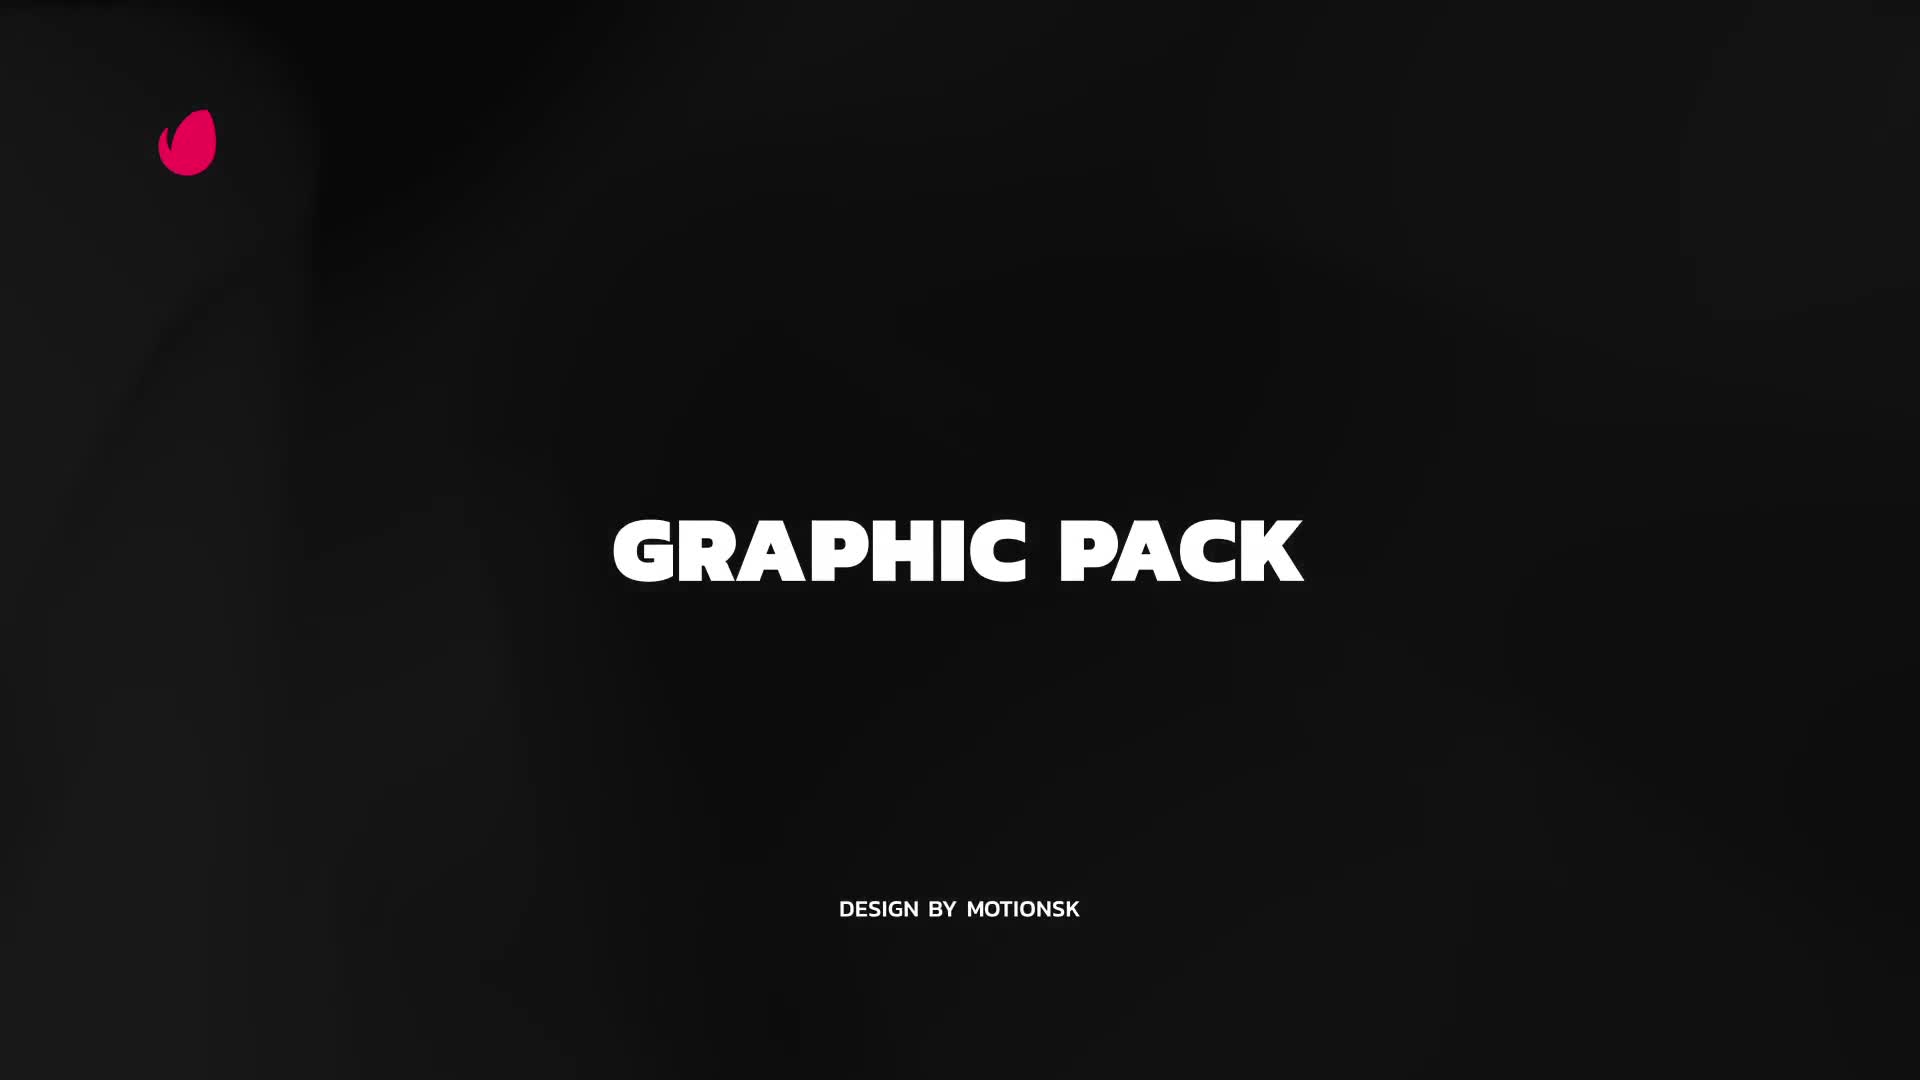 Creative Graphic Pack | Premiere Pro Videohive 25771591 Premiere Pro Image 1